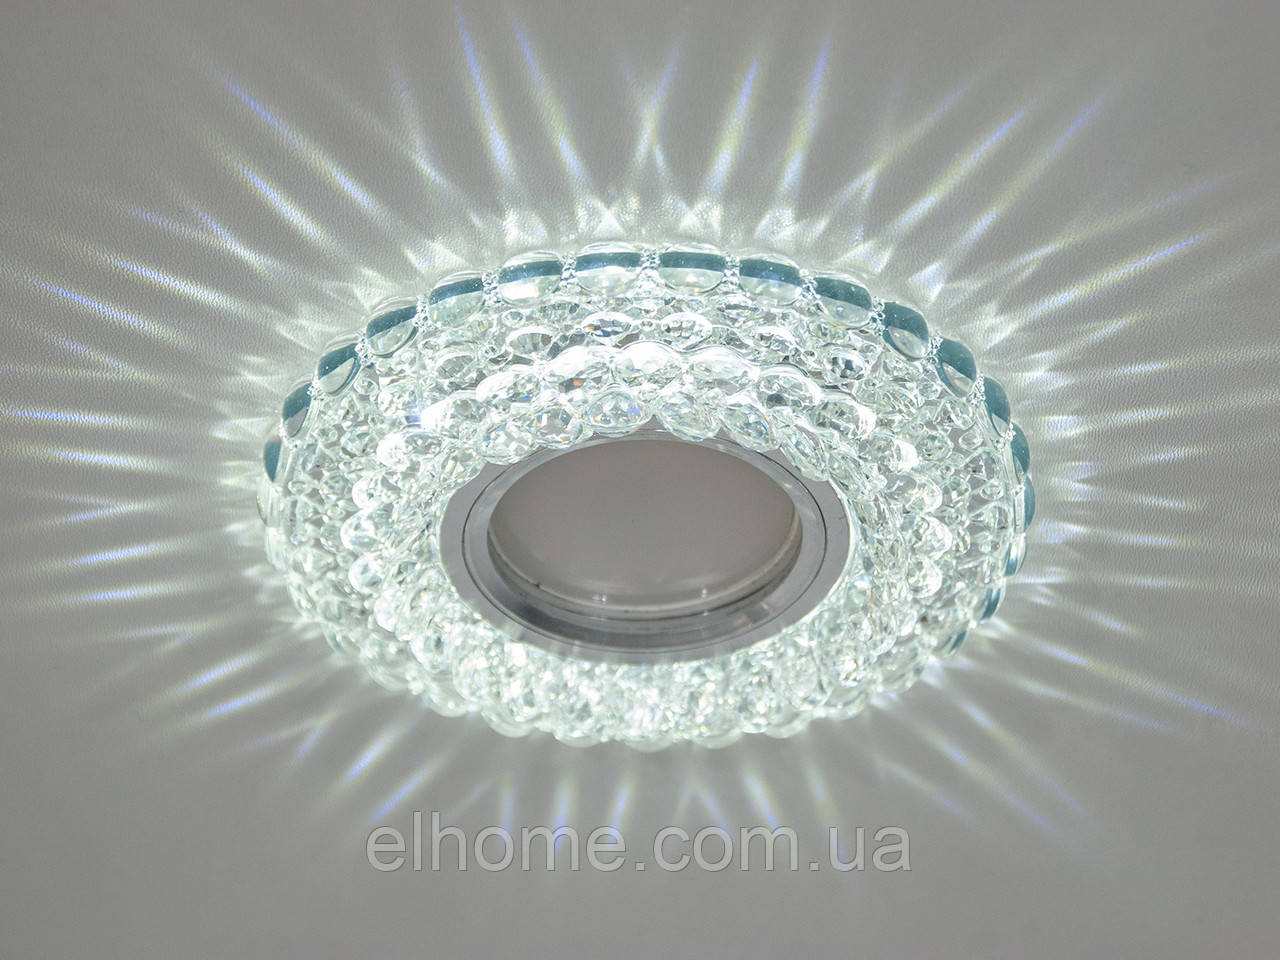 Точечные светильники с LED подсветкой: за найкращою ціною. люстры від  "Elhome" - +380 (96) 793-37-70